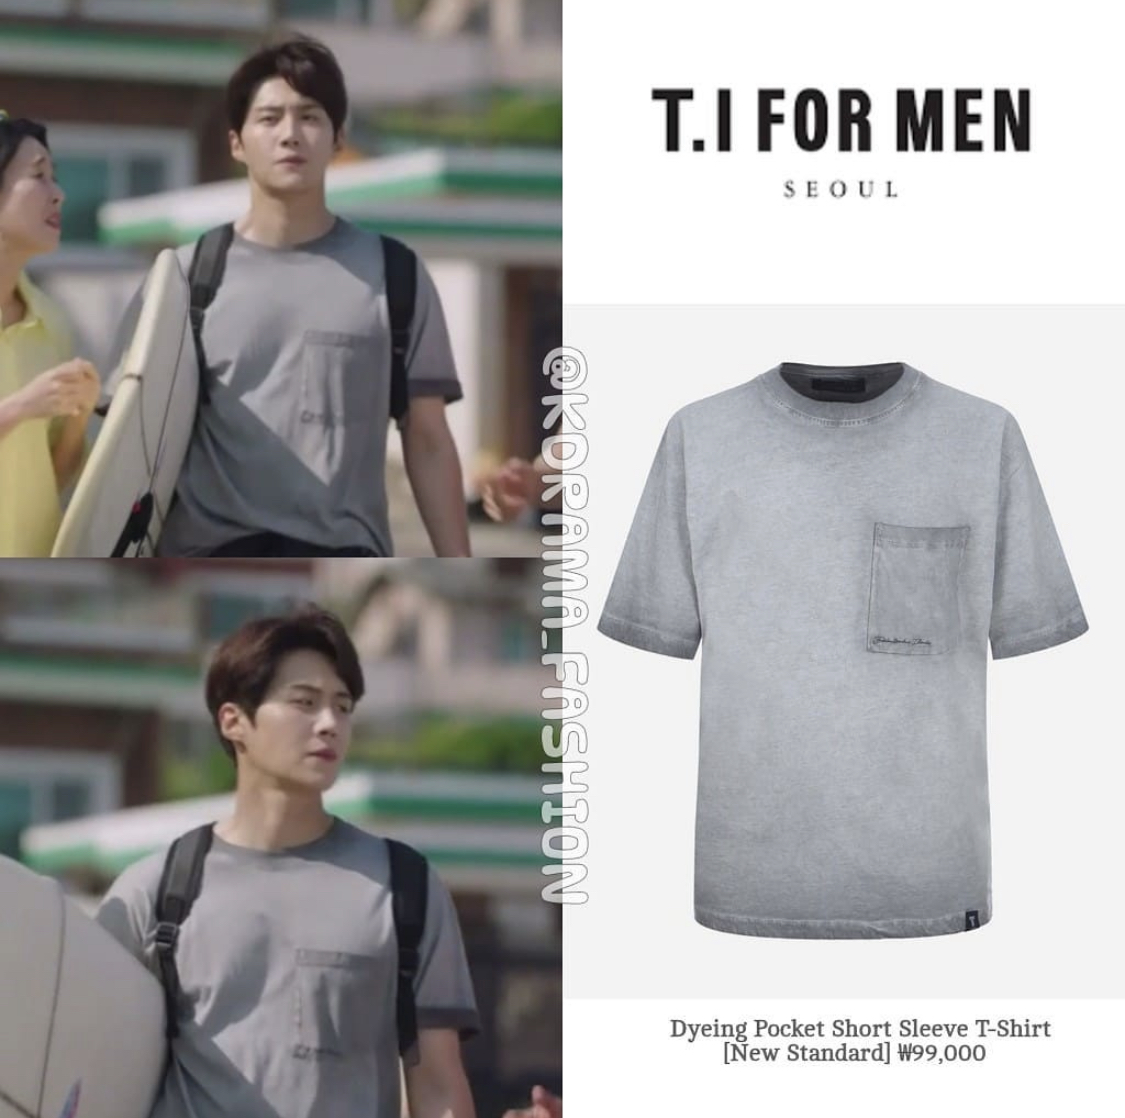 Chiếc áo T-shirt màu ghi đúng chuẩn style bụi bặm của Mr.Hong đến từ một thương hiệu thời trang nam giới có giá khoảng 2 triệu đồng. Dân tình cũng phải ngỡ ngàng trước độ chịu chơi của anh chàng Doo Shik.